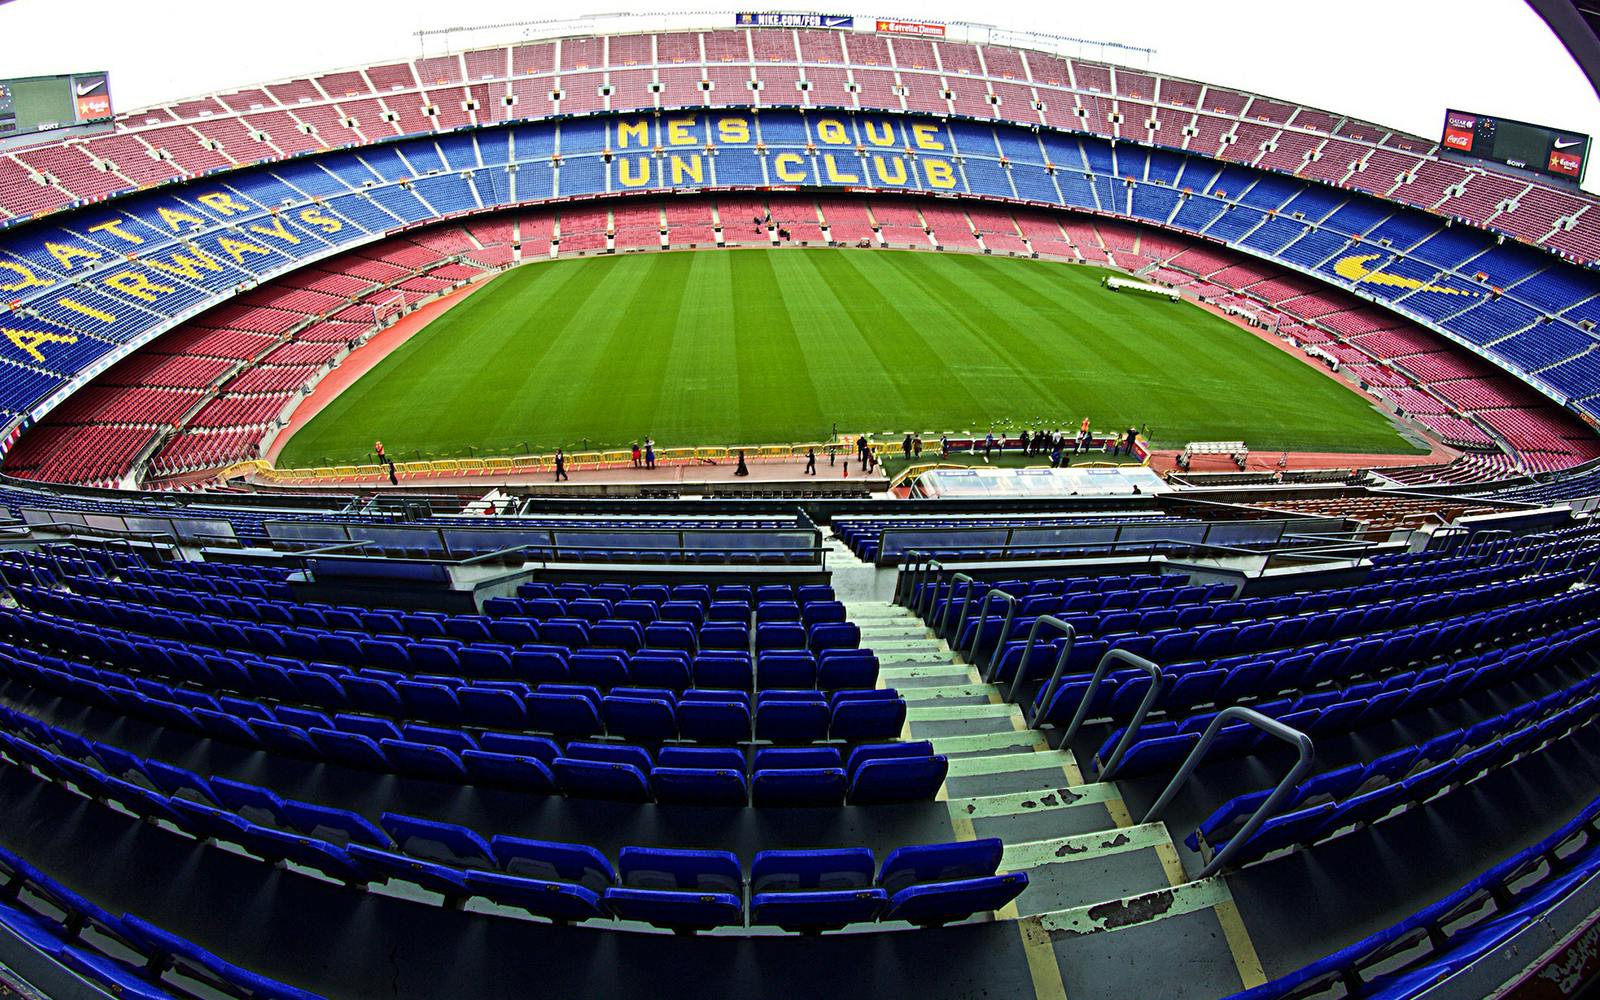 Камп ноу стадион. Барселона Камп ноу. Стадион Камп ноу Барселона Испания. Стадион Camp nou. Кампа нова